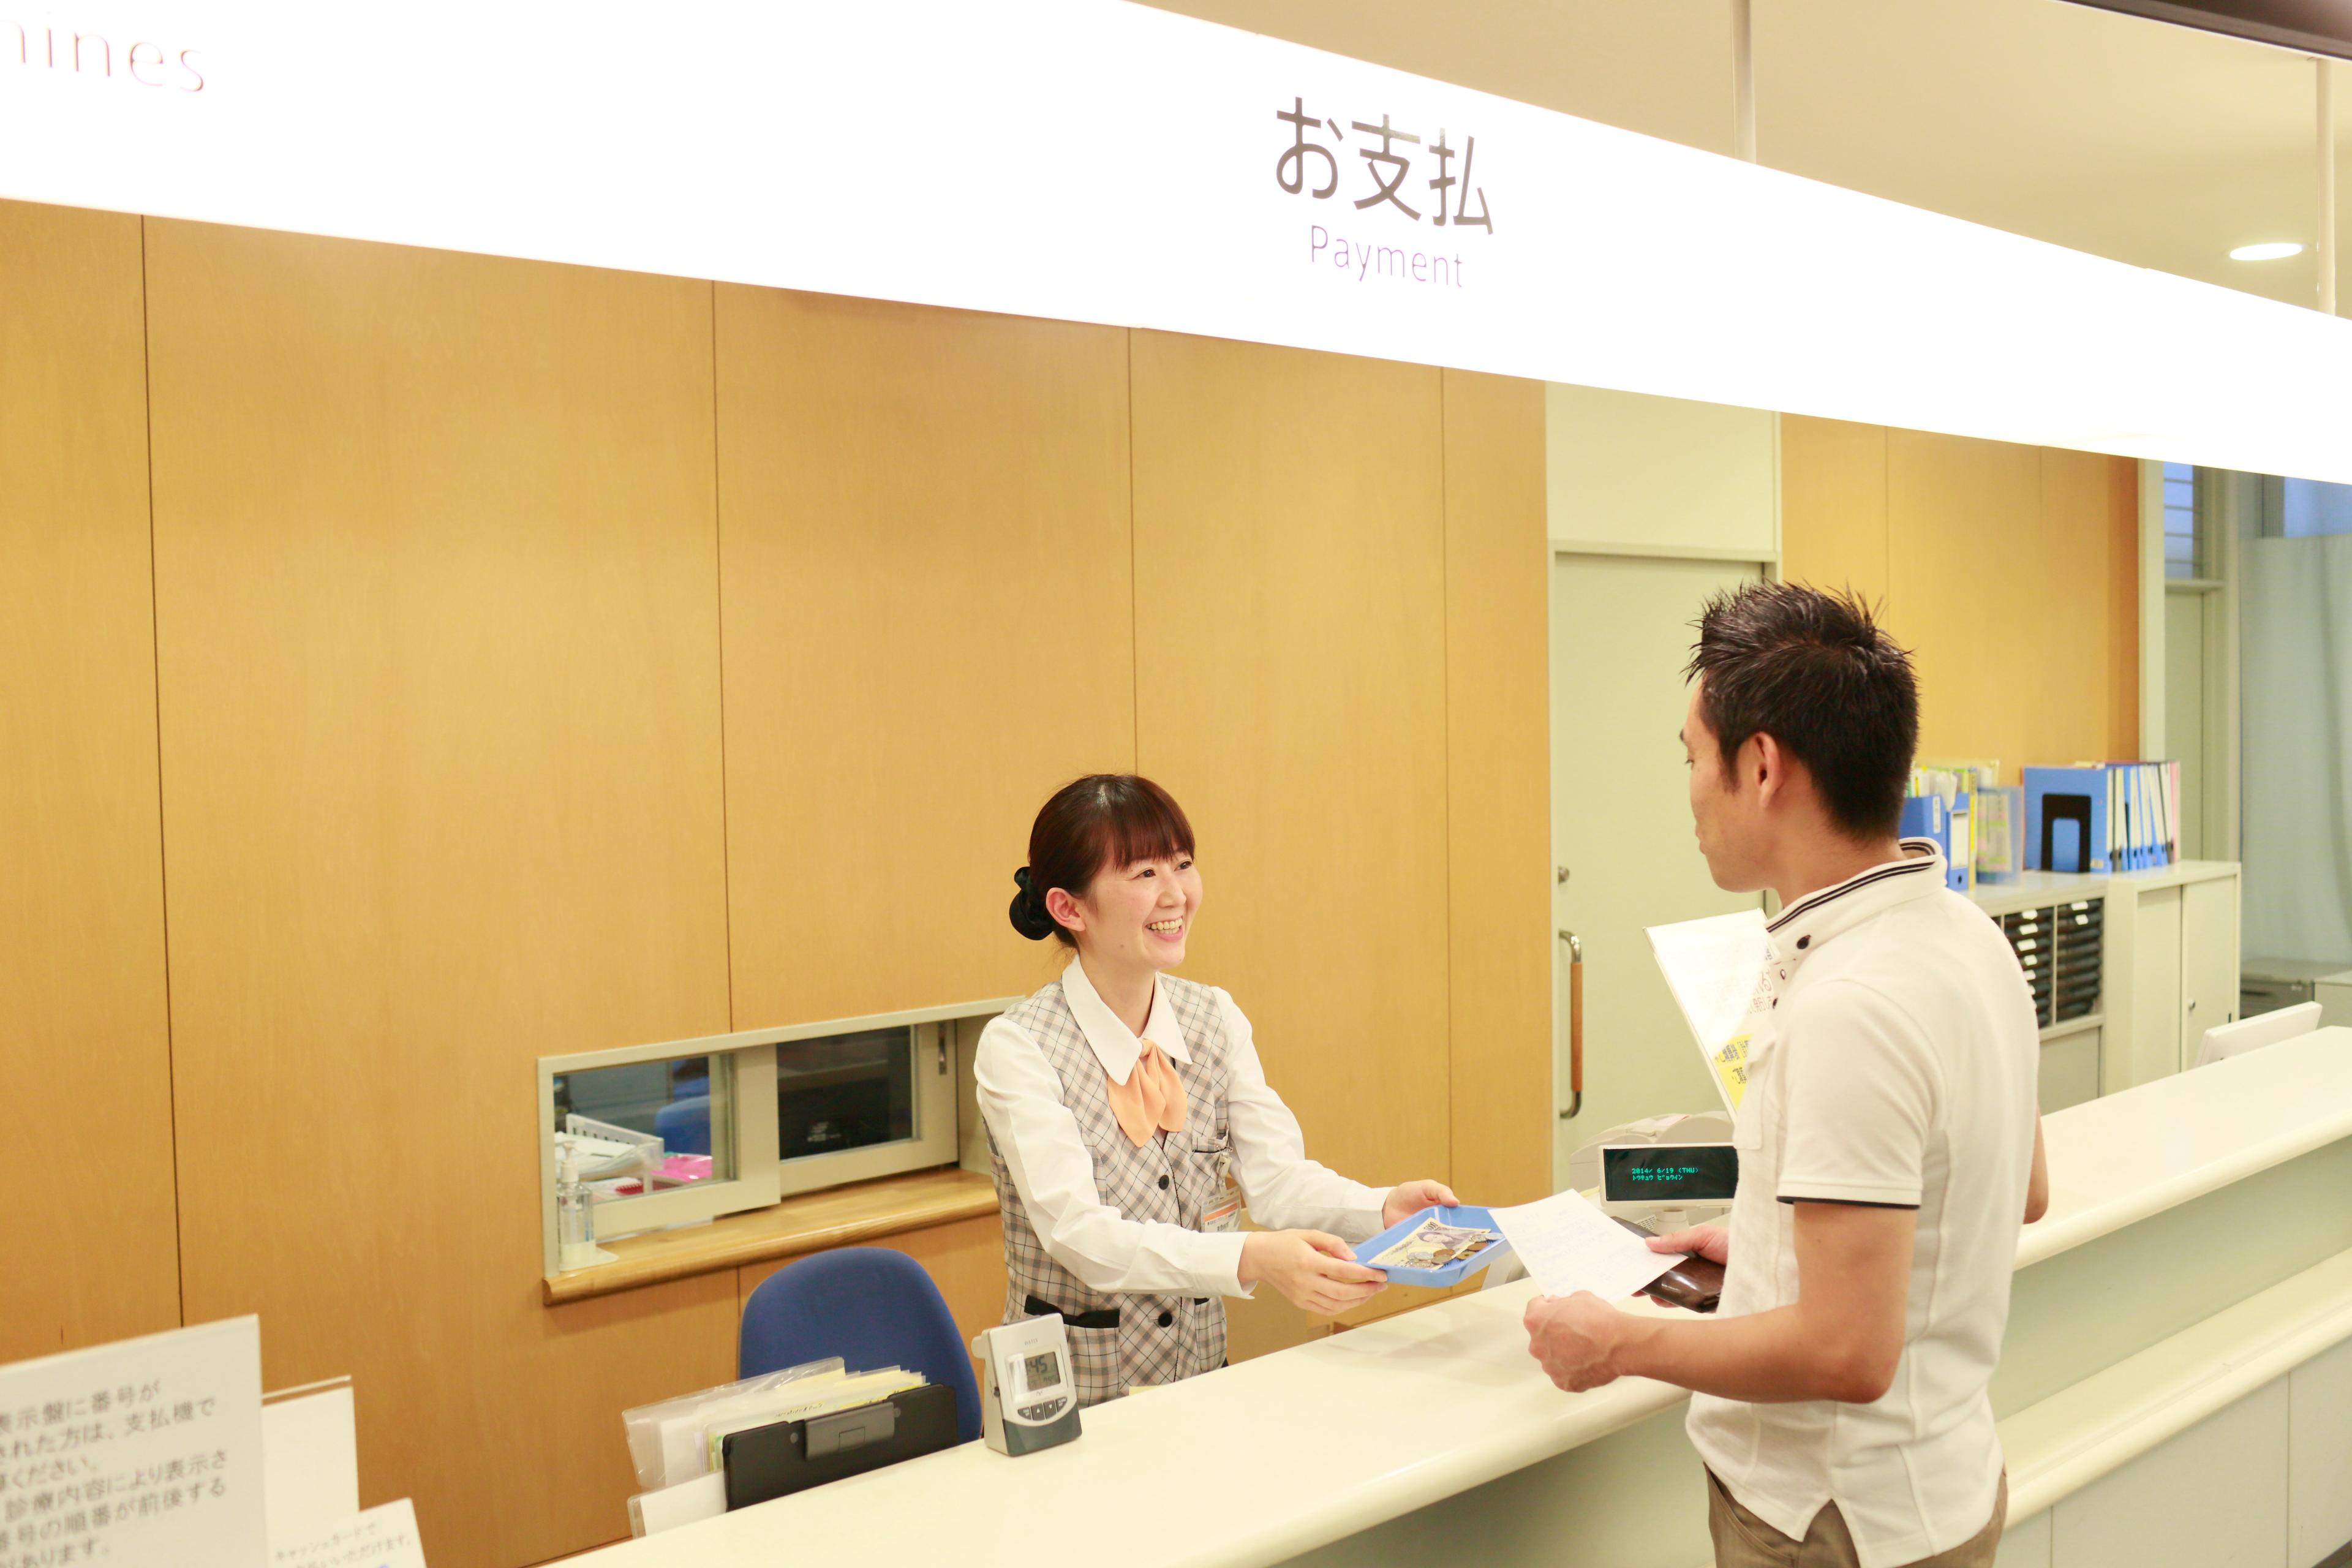 横浜市総合保健医療センターで医療事務会計窓口の正社員の求人 